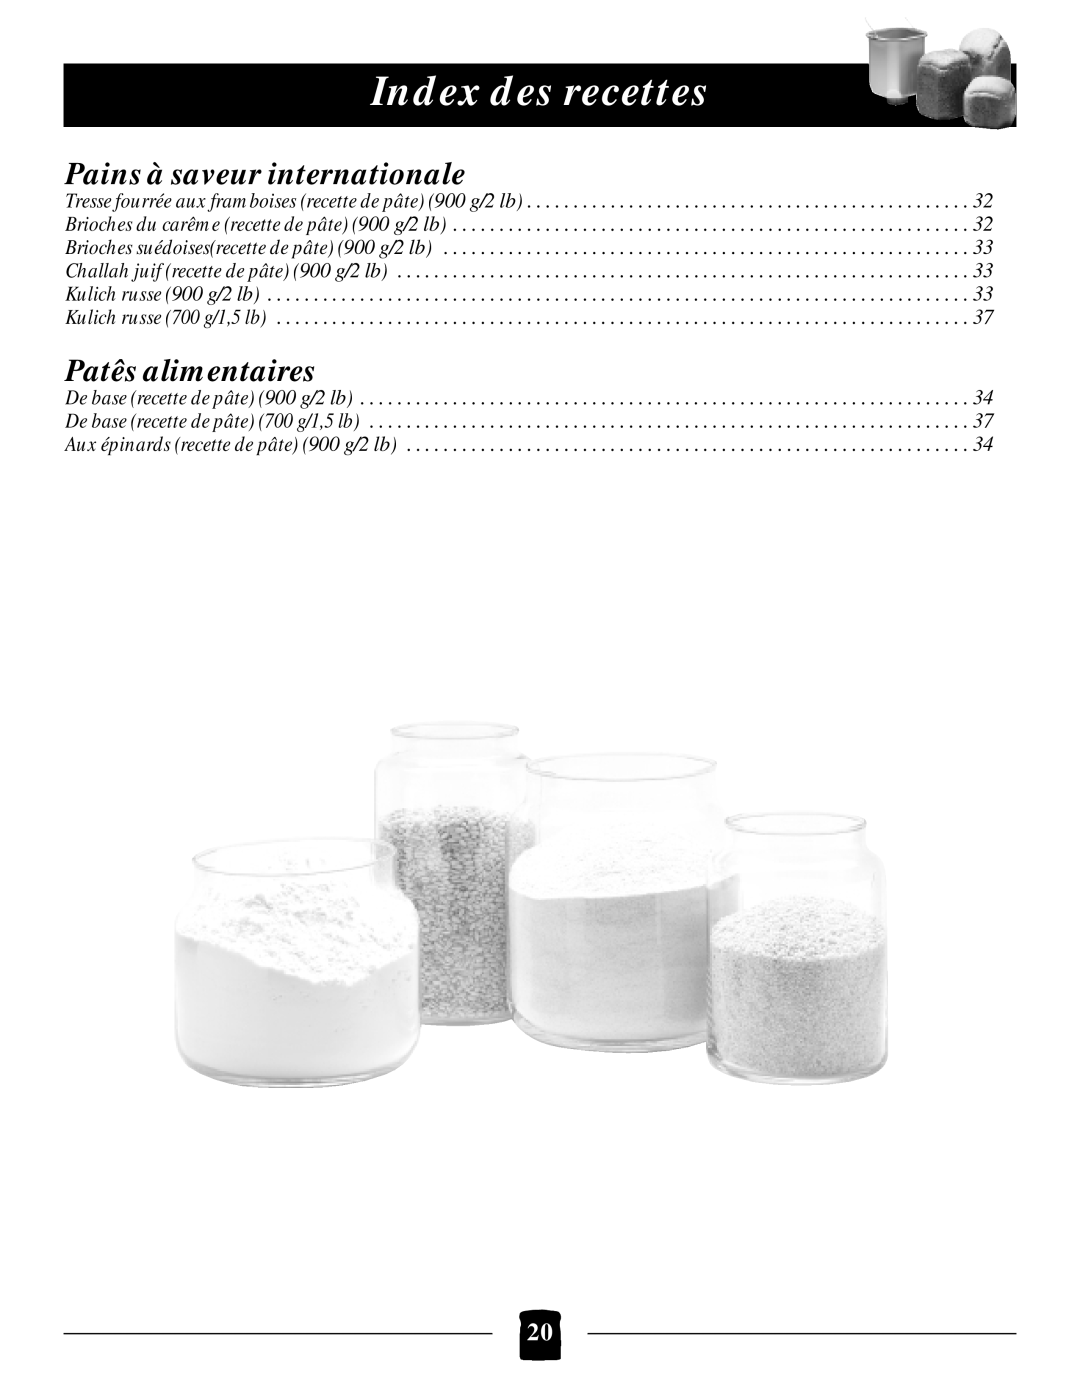 Black & Decker B1650 manual Pains à saveur internationale, Patês alimentaires, Index des recettes 